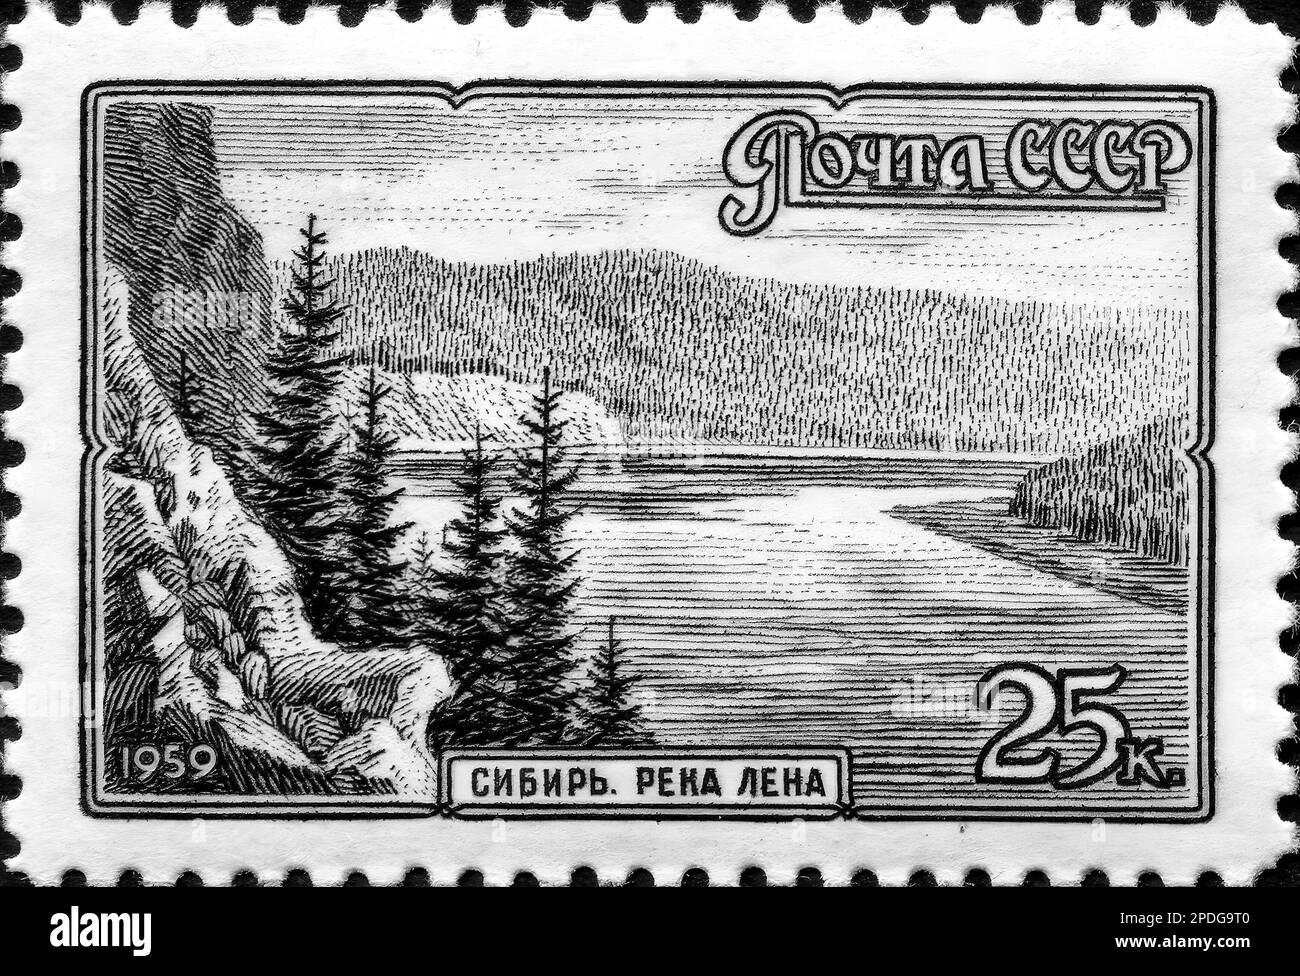 Stamp print in USSR, 1959, scenery, Siberia, Lena river Stock Photo